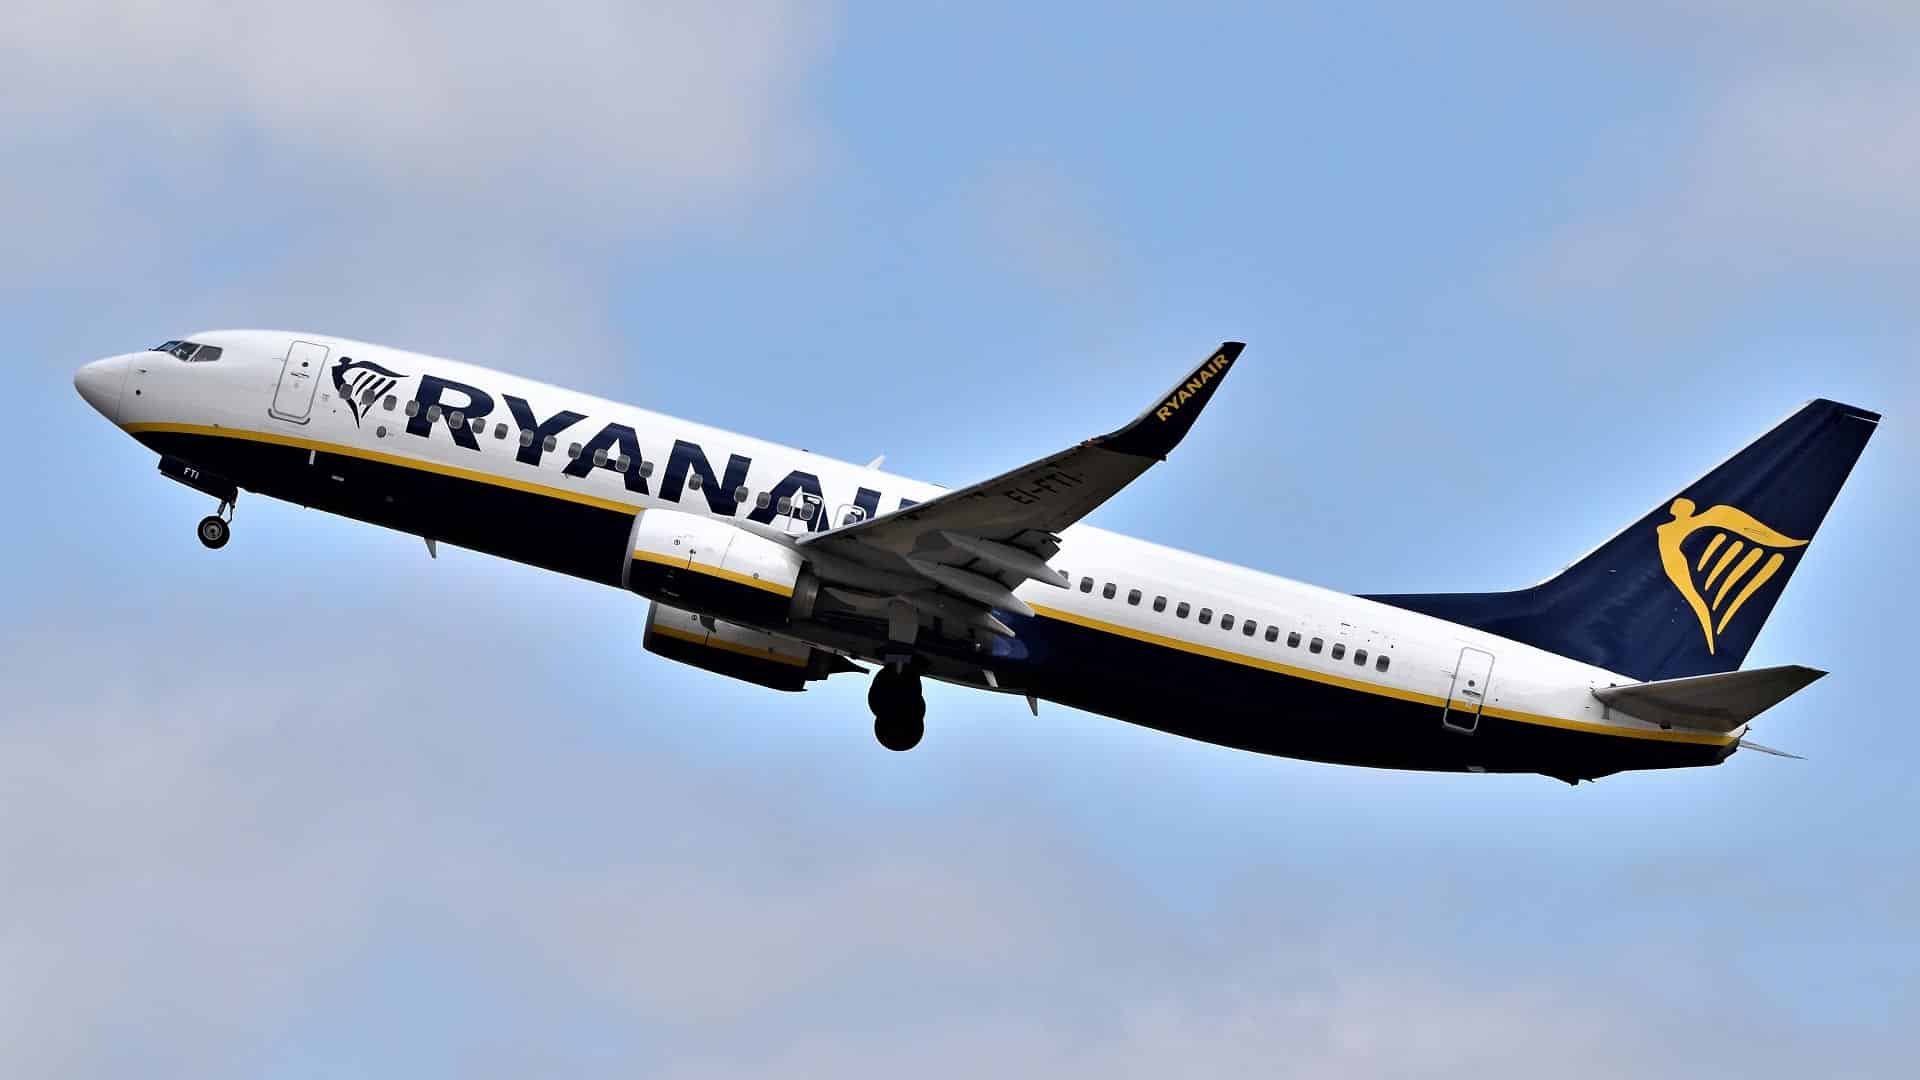 αεροπλάνο, Boeing 738 της Ryanair με 192 επιβαίνοντες, από την Πολωνία